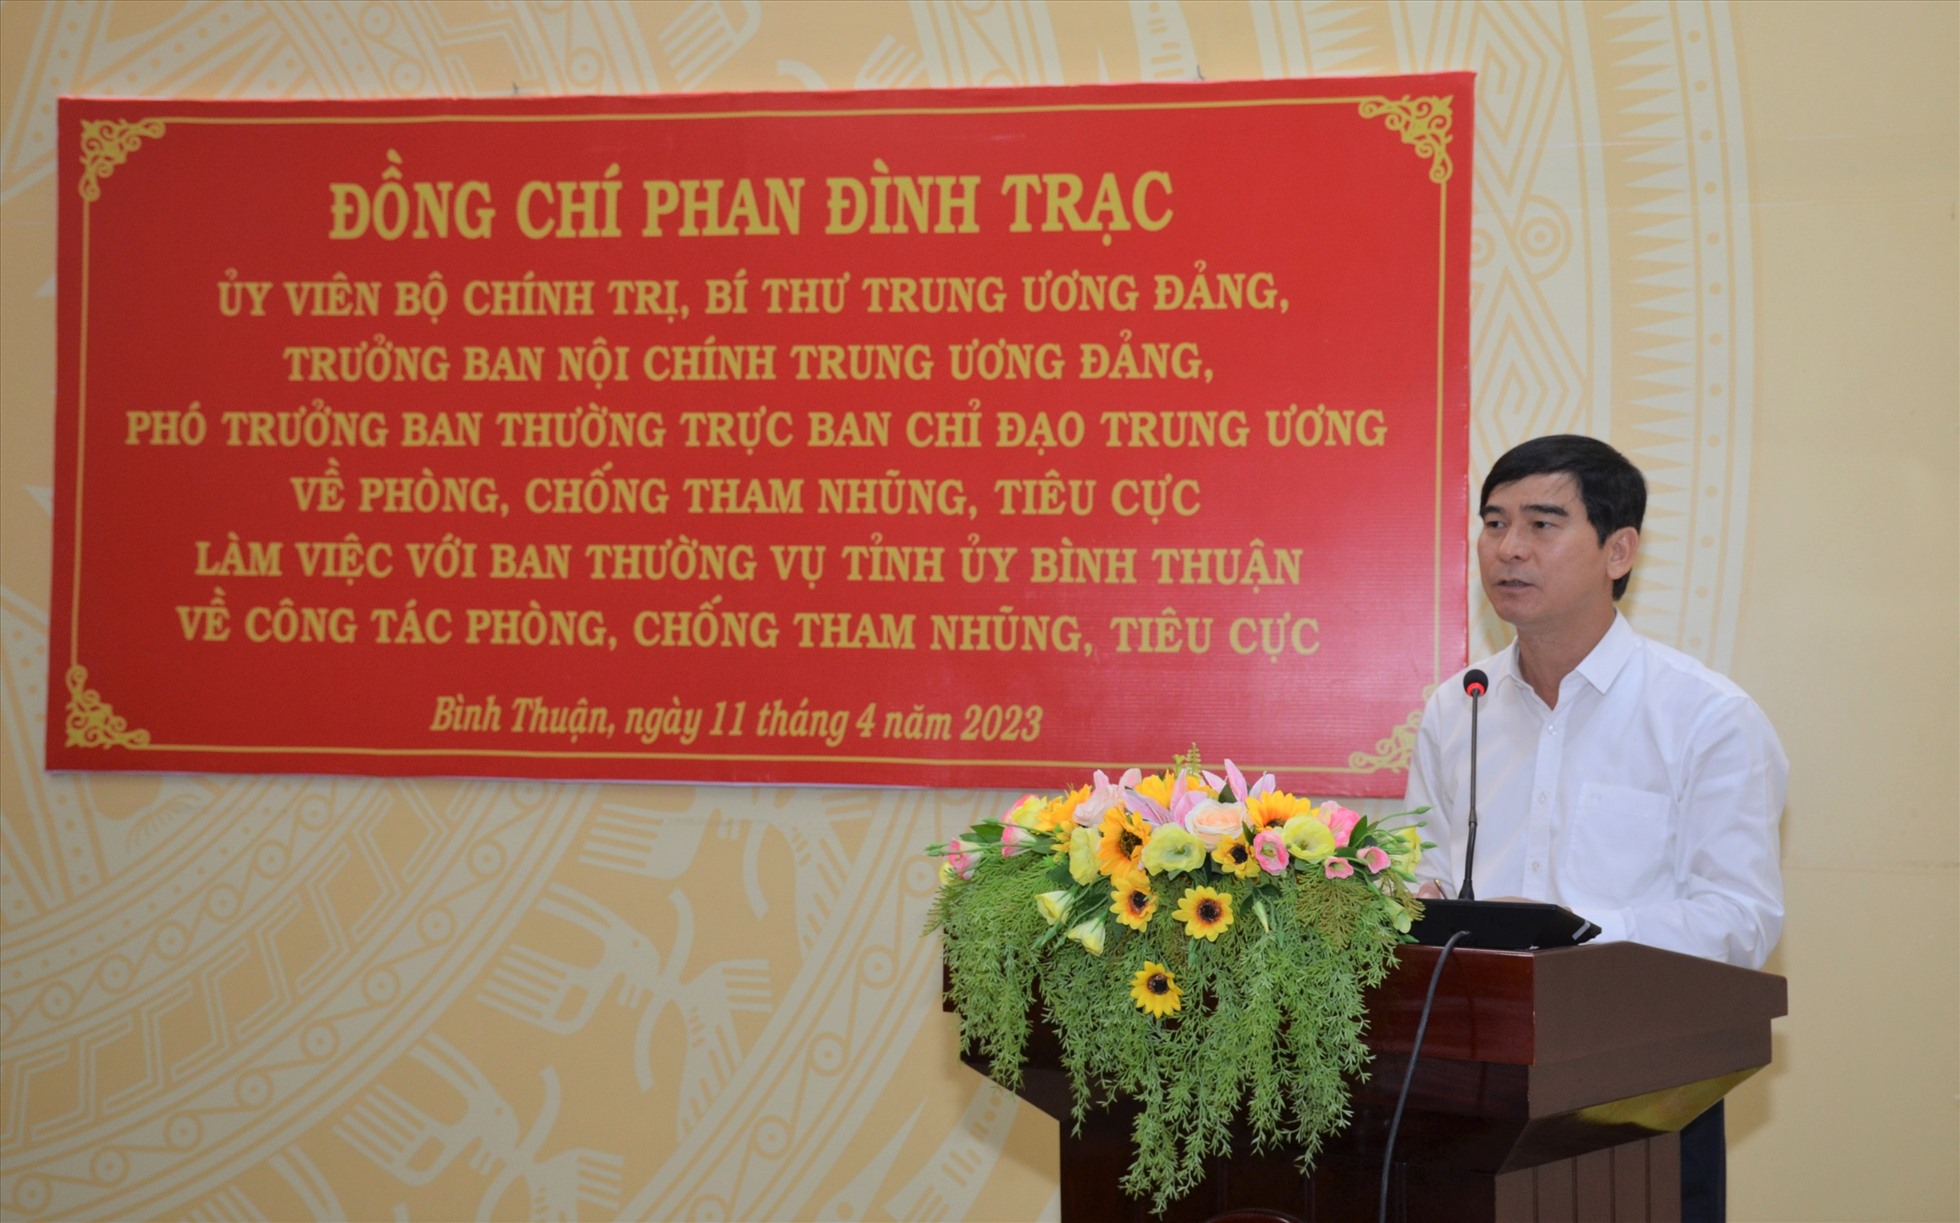 Đồng chí Dương Văn An - Bí thư Tỉnh ủy Bình Thuận phát biểu tiếp thu ý kiến chỉ đạo. Ảnh: Phạm Duy